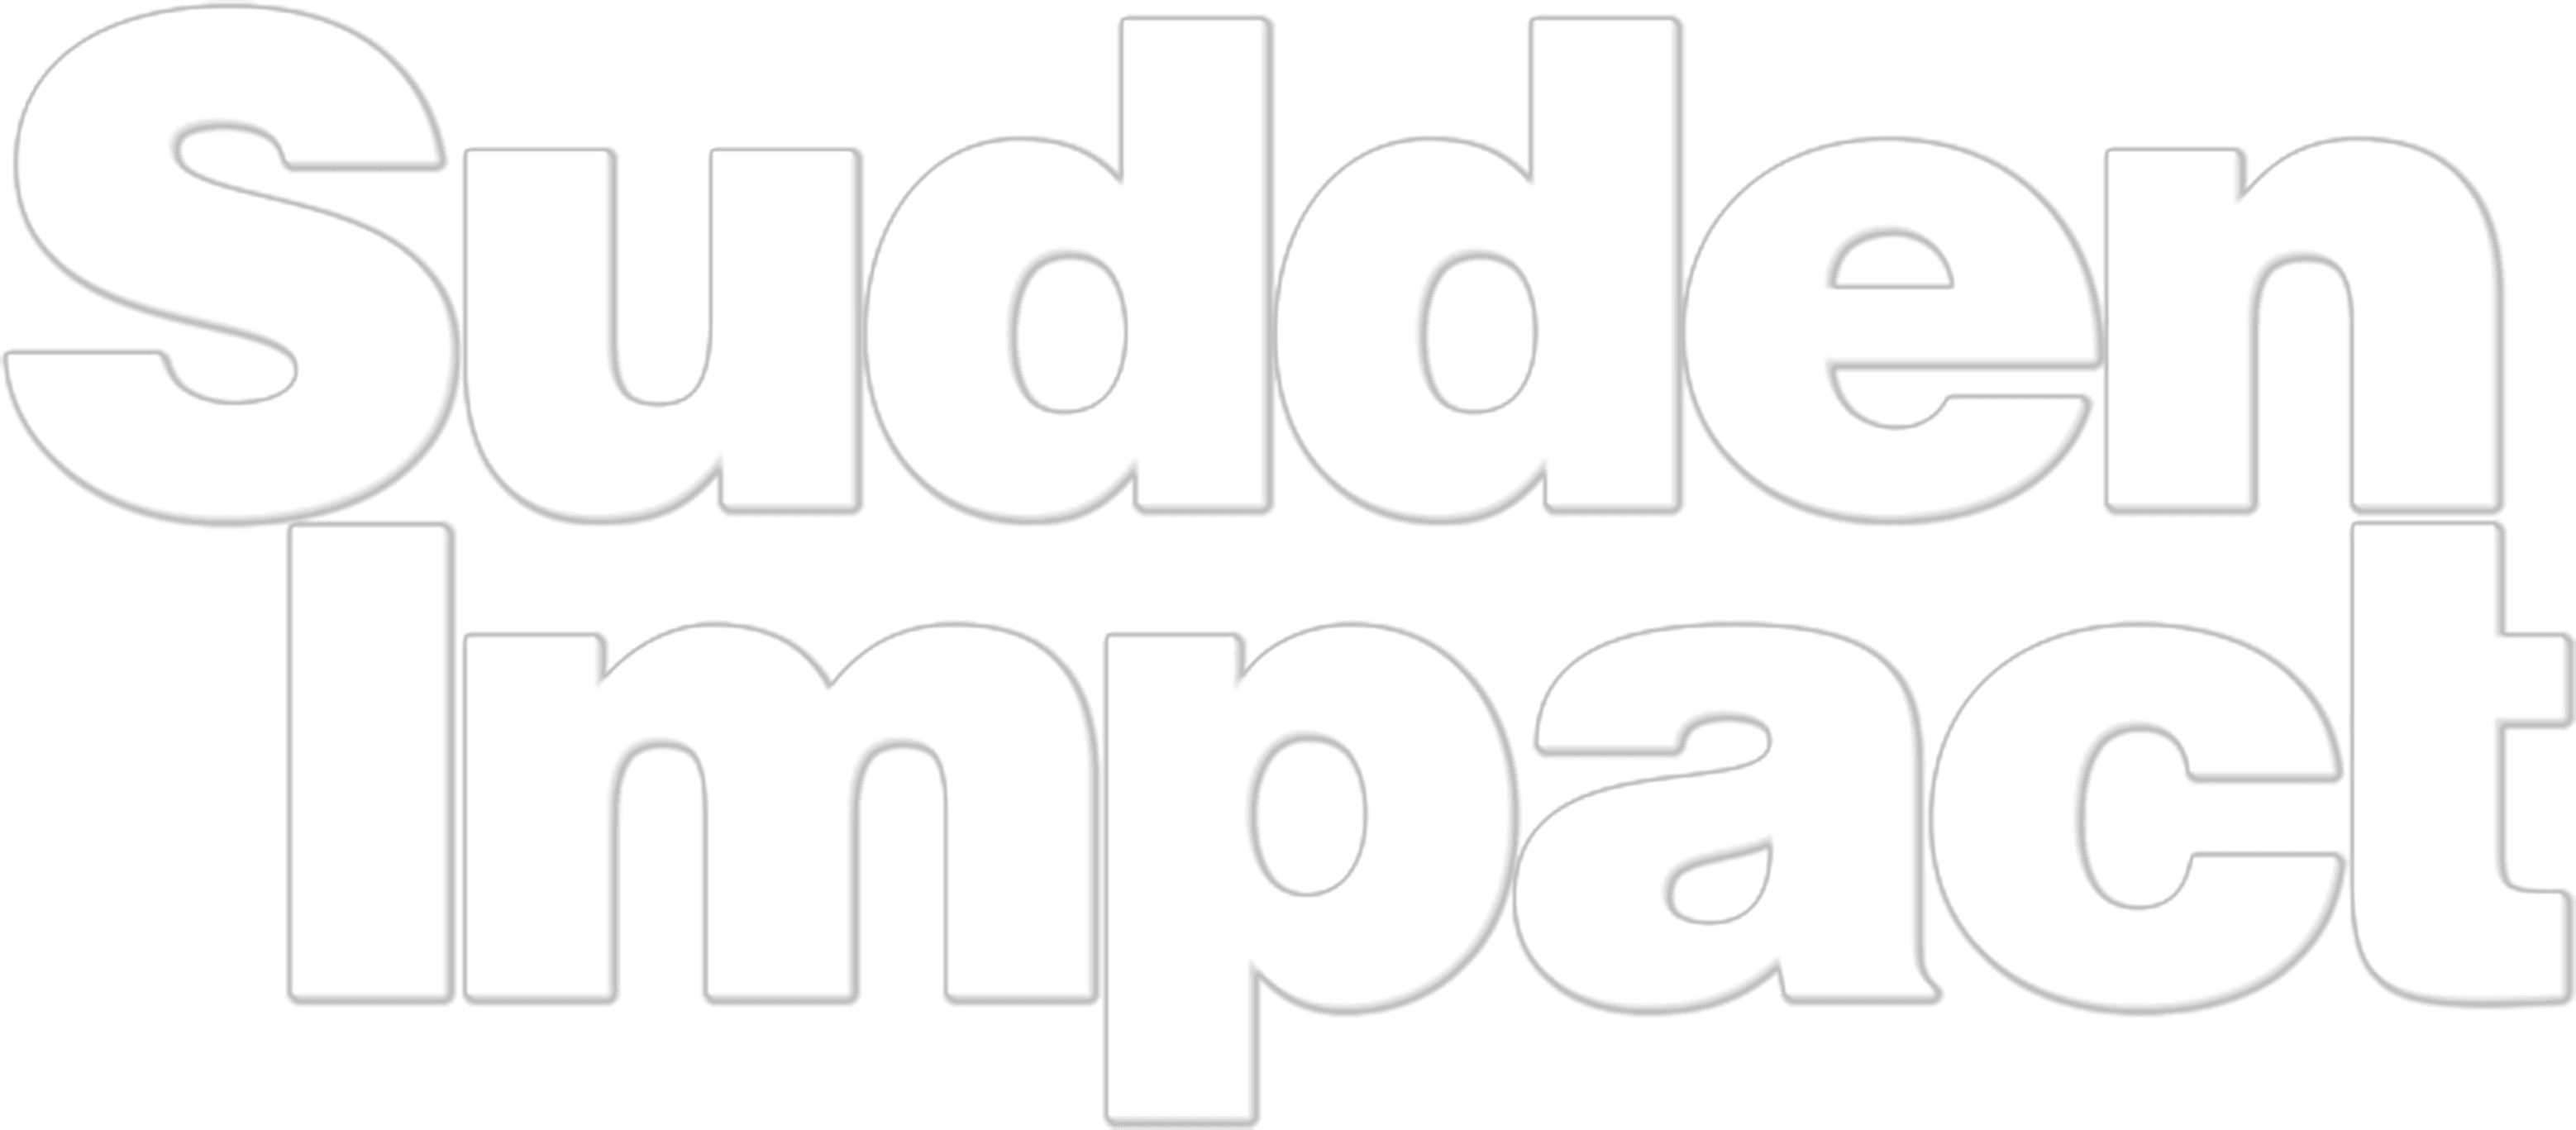 Sudden Impact logo